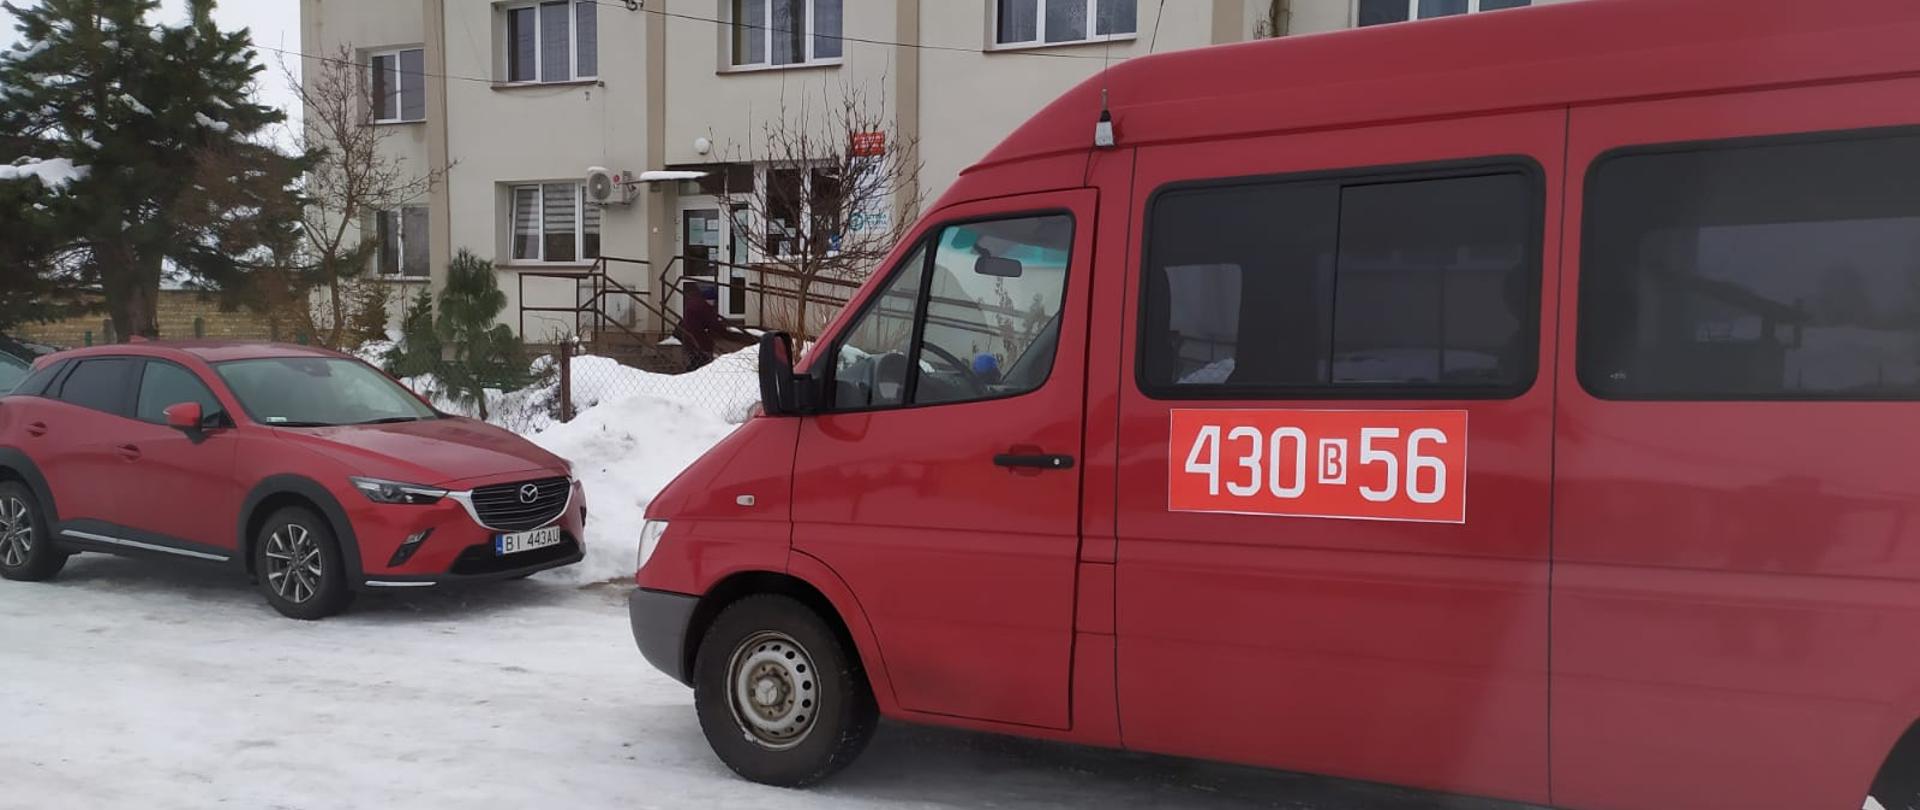 Przed budynkiem ośrodka zdrowia w Narwi na zaśnieżonej drodze stoi strażacki czerwony bus z numerami operacyjnymi 430 b 56.